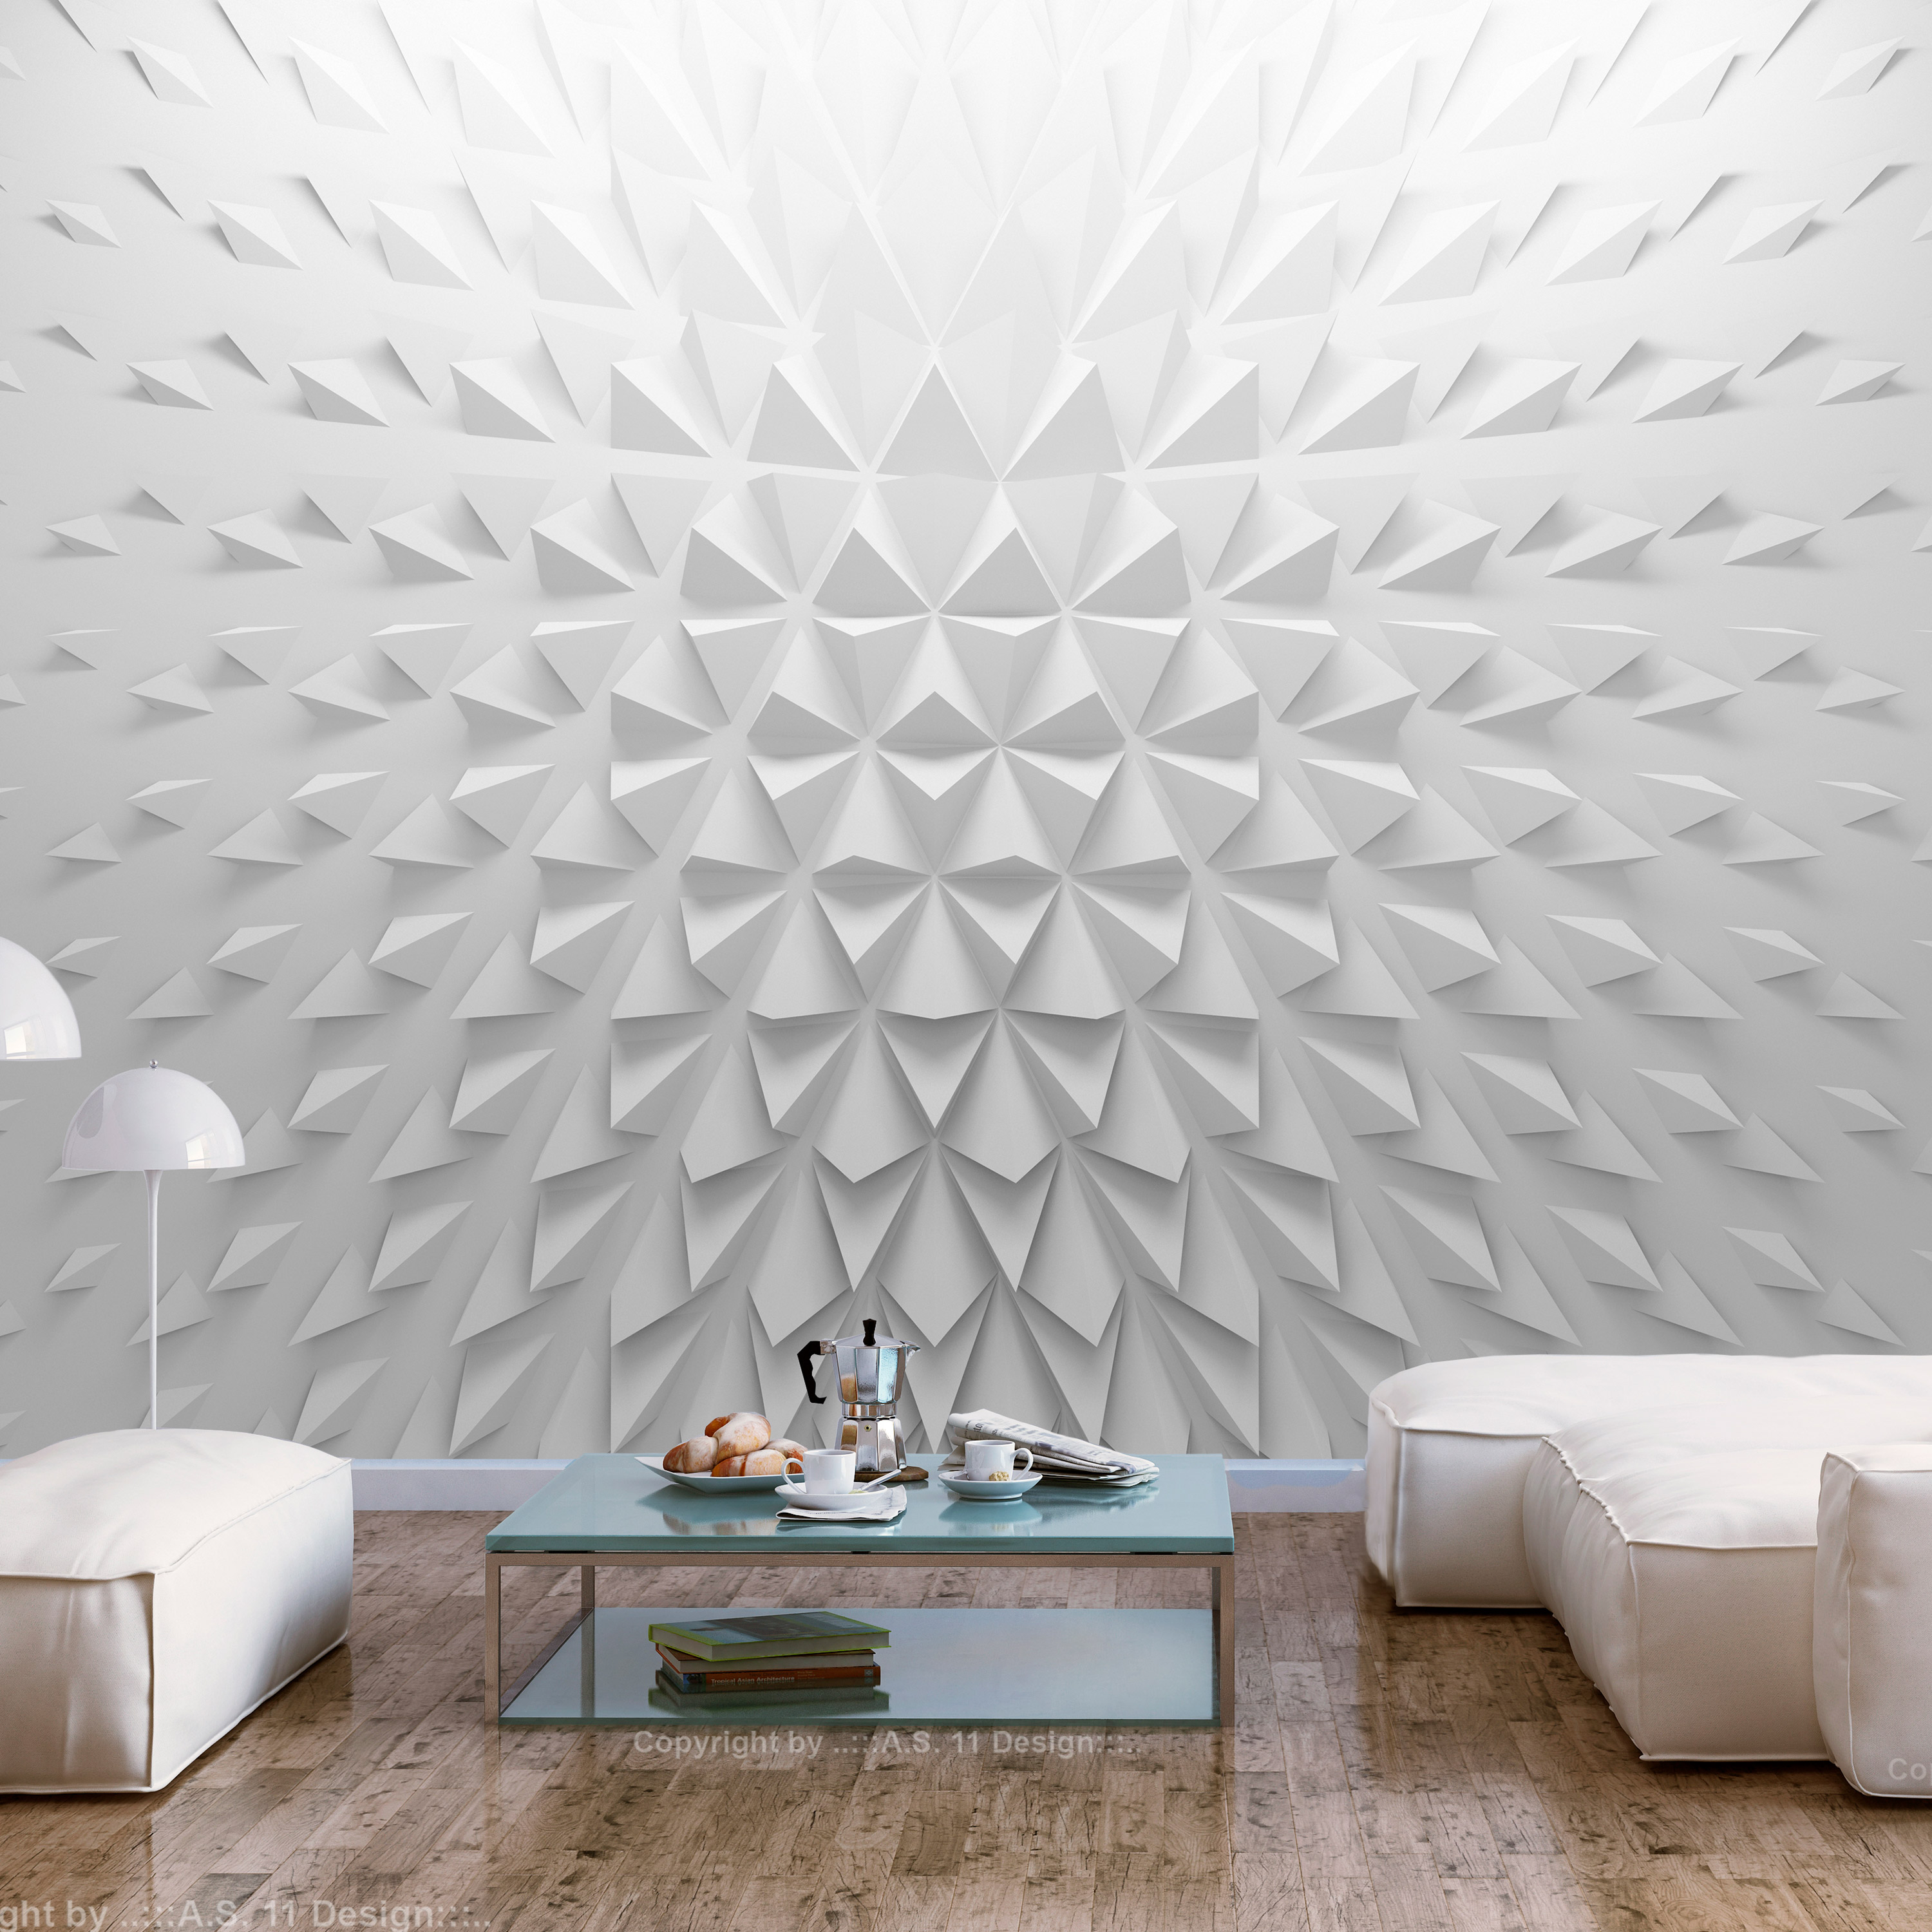 Self-adhesive Wallpaper - Tetrahedrons - 147x105